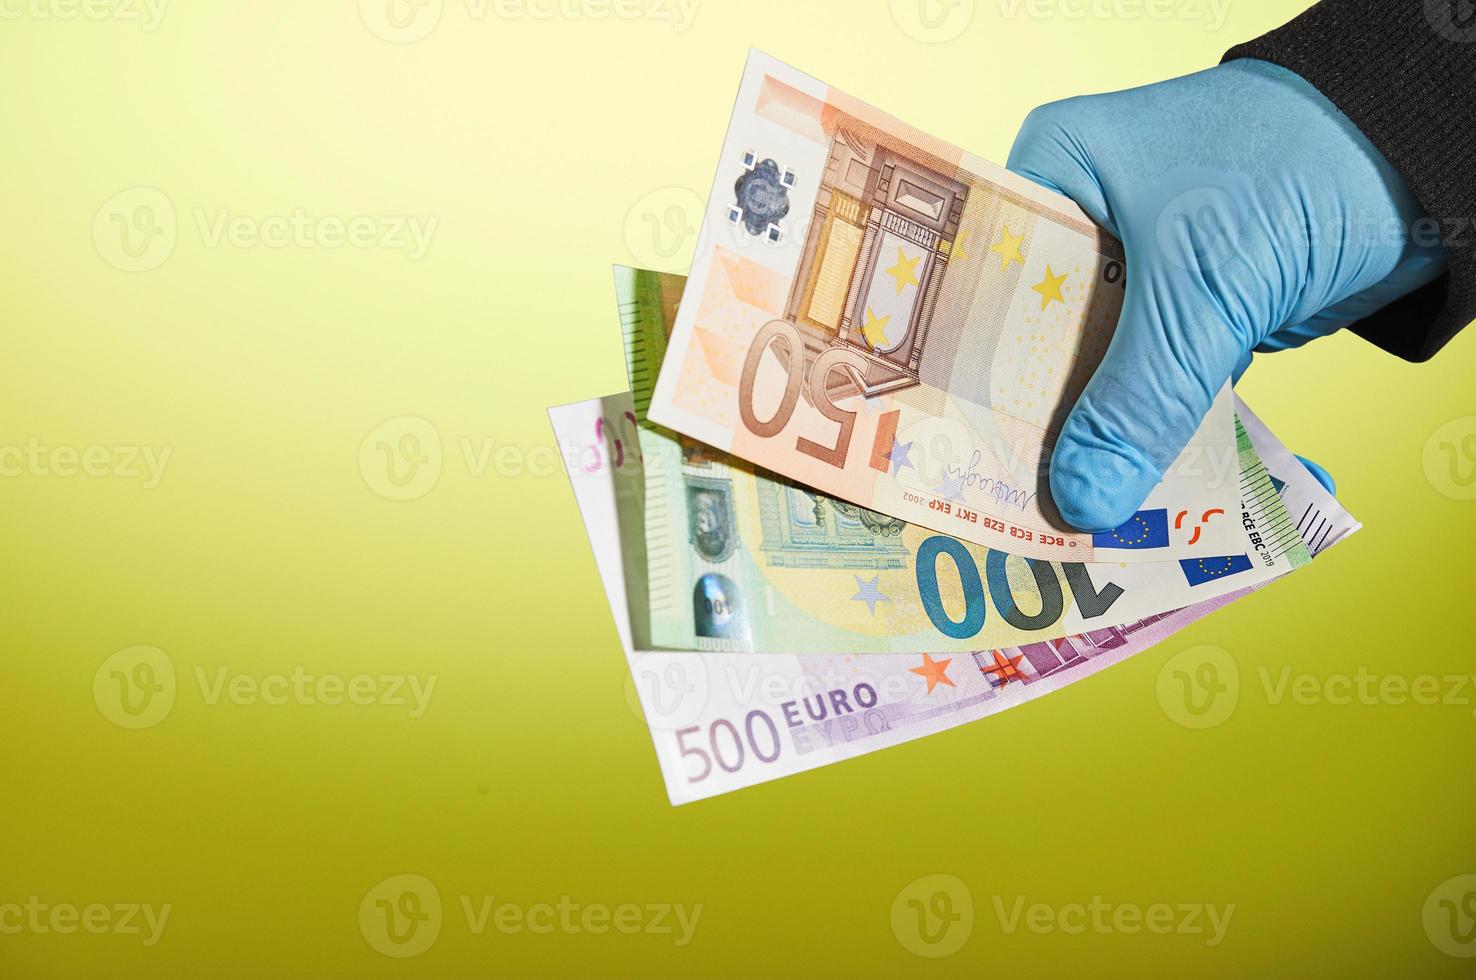 handen på en man i en blå medicinsk handske håller pengar i form av euroräkningar på gul bakgrund foto